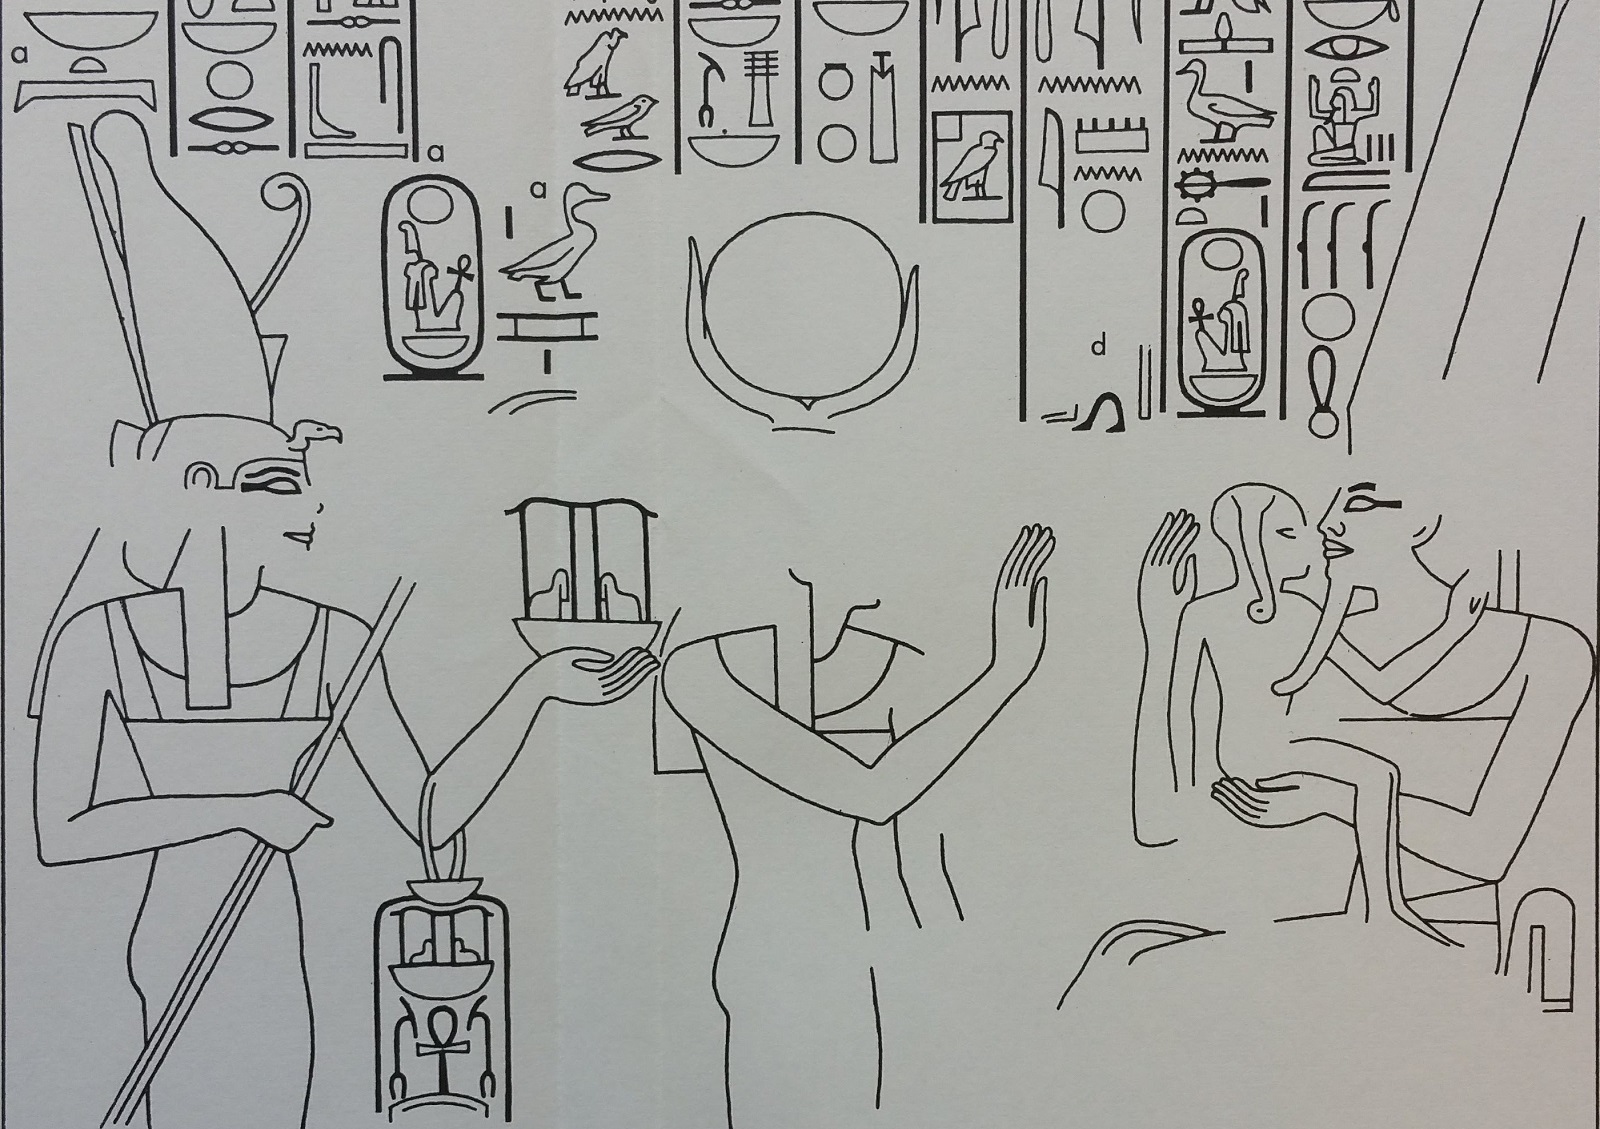 Amunhotep 3 - Mutemwia (11)